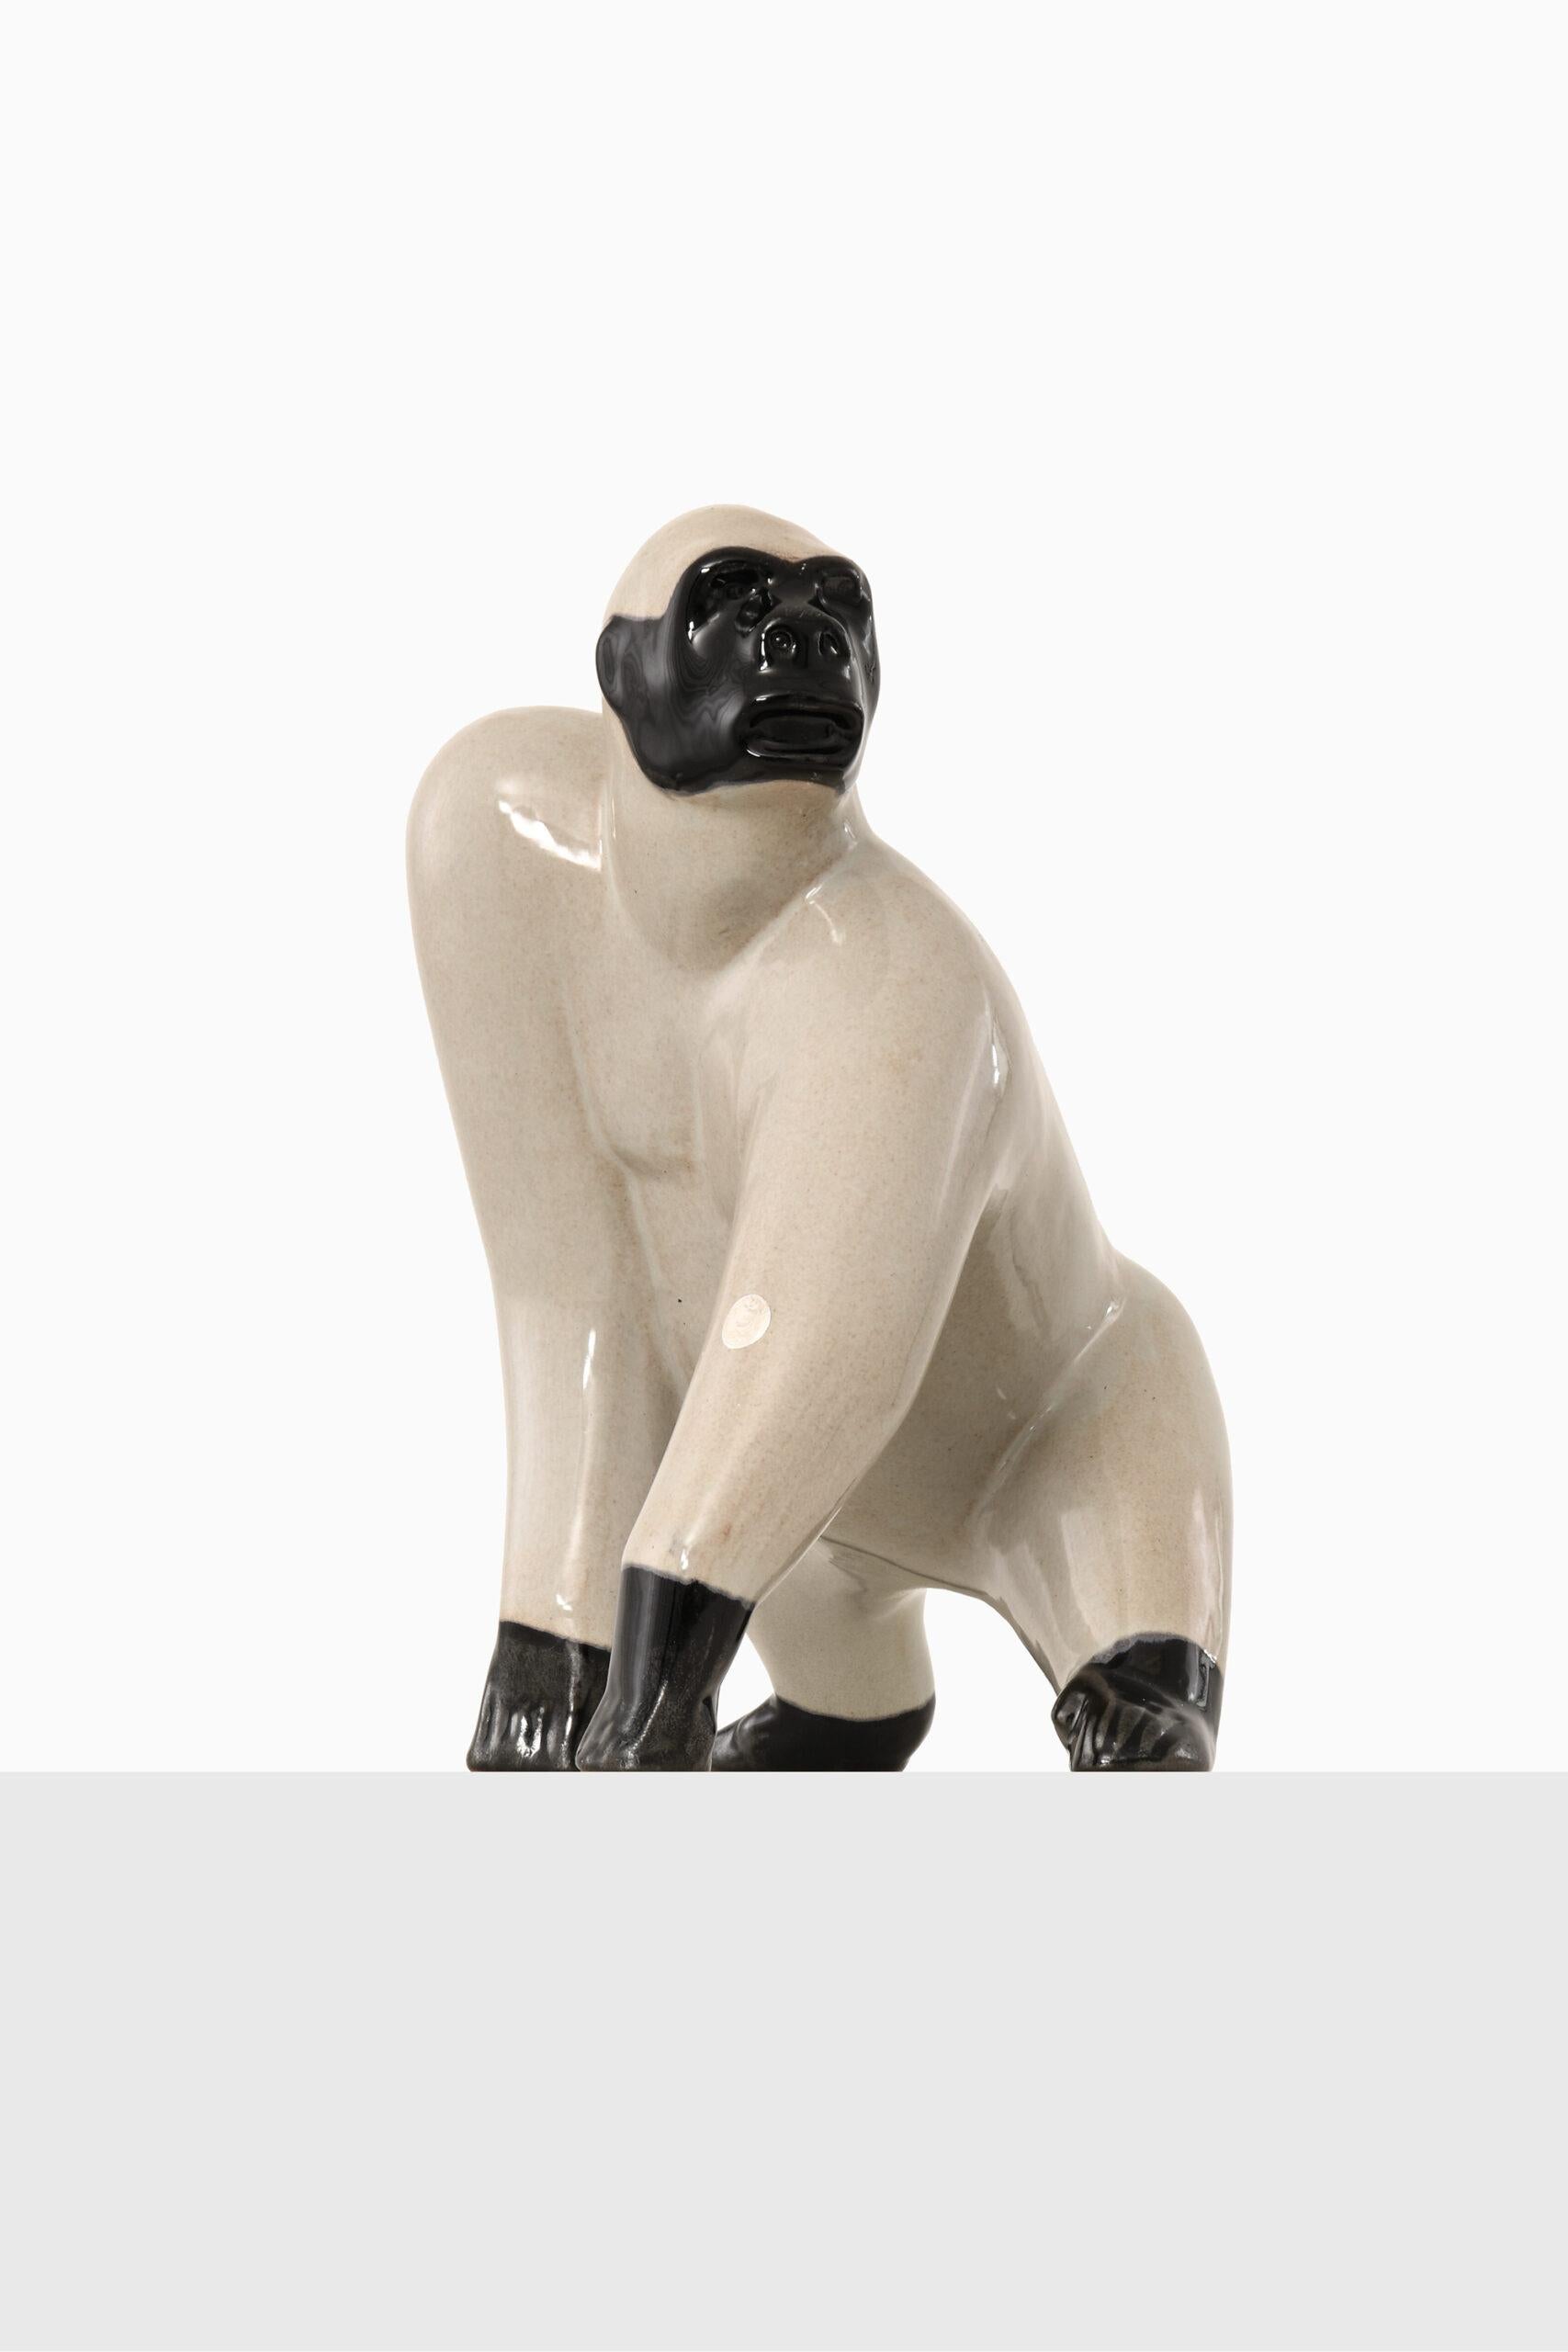 Sculpture gorilla by unknown designer. Produced by Gabriel in Sweden.